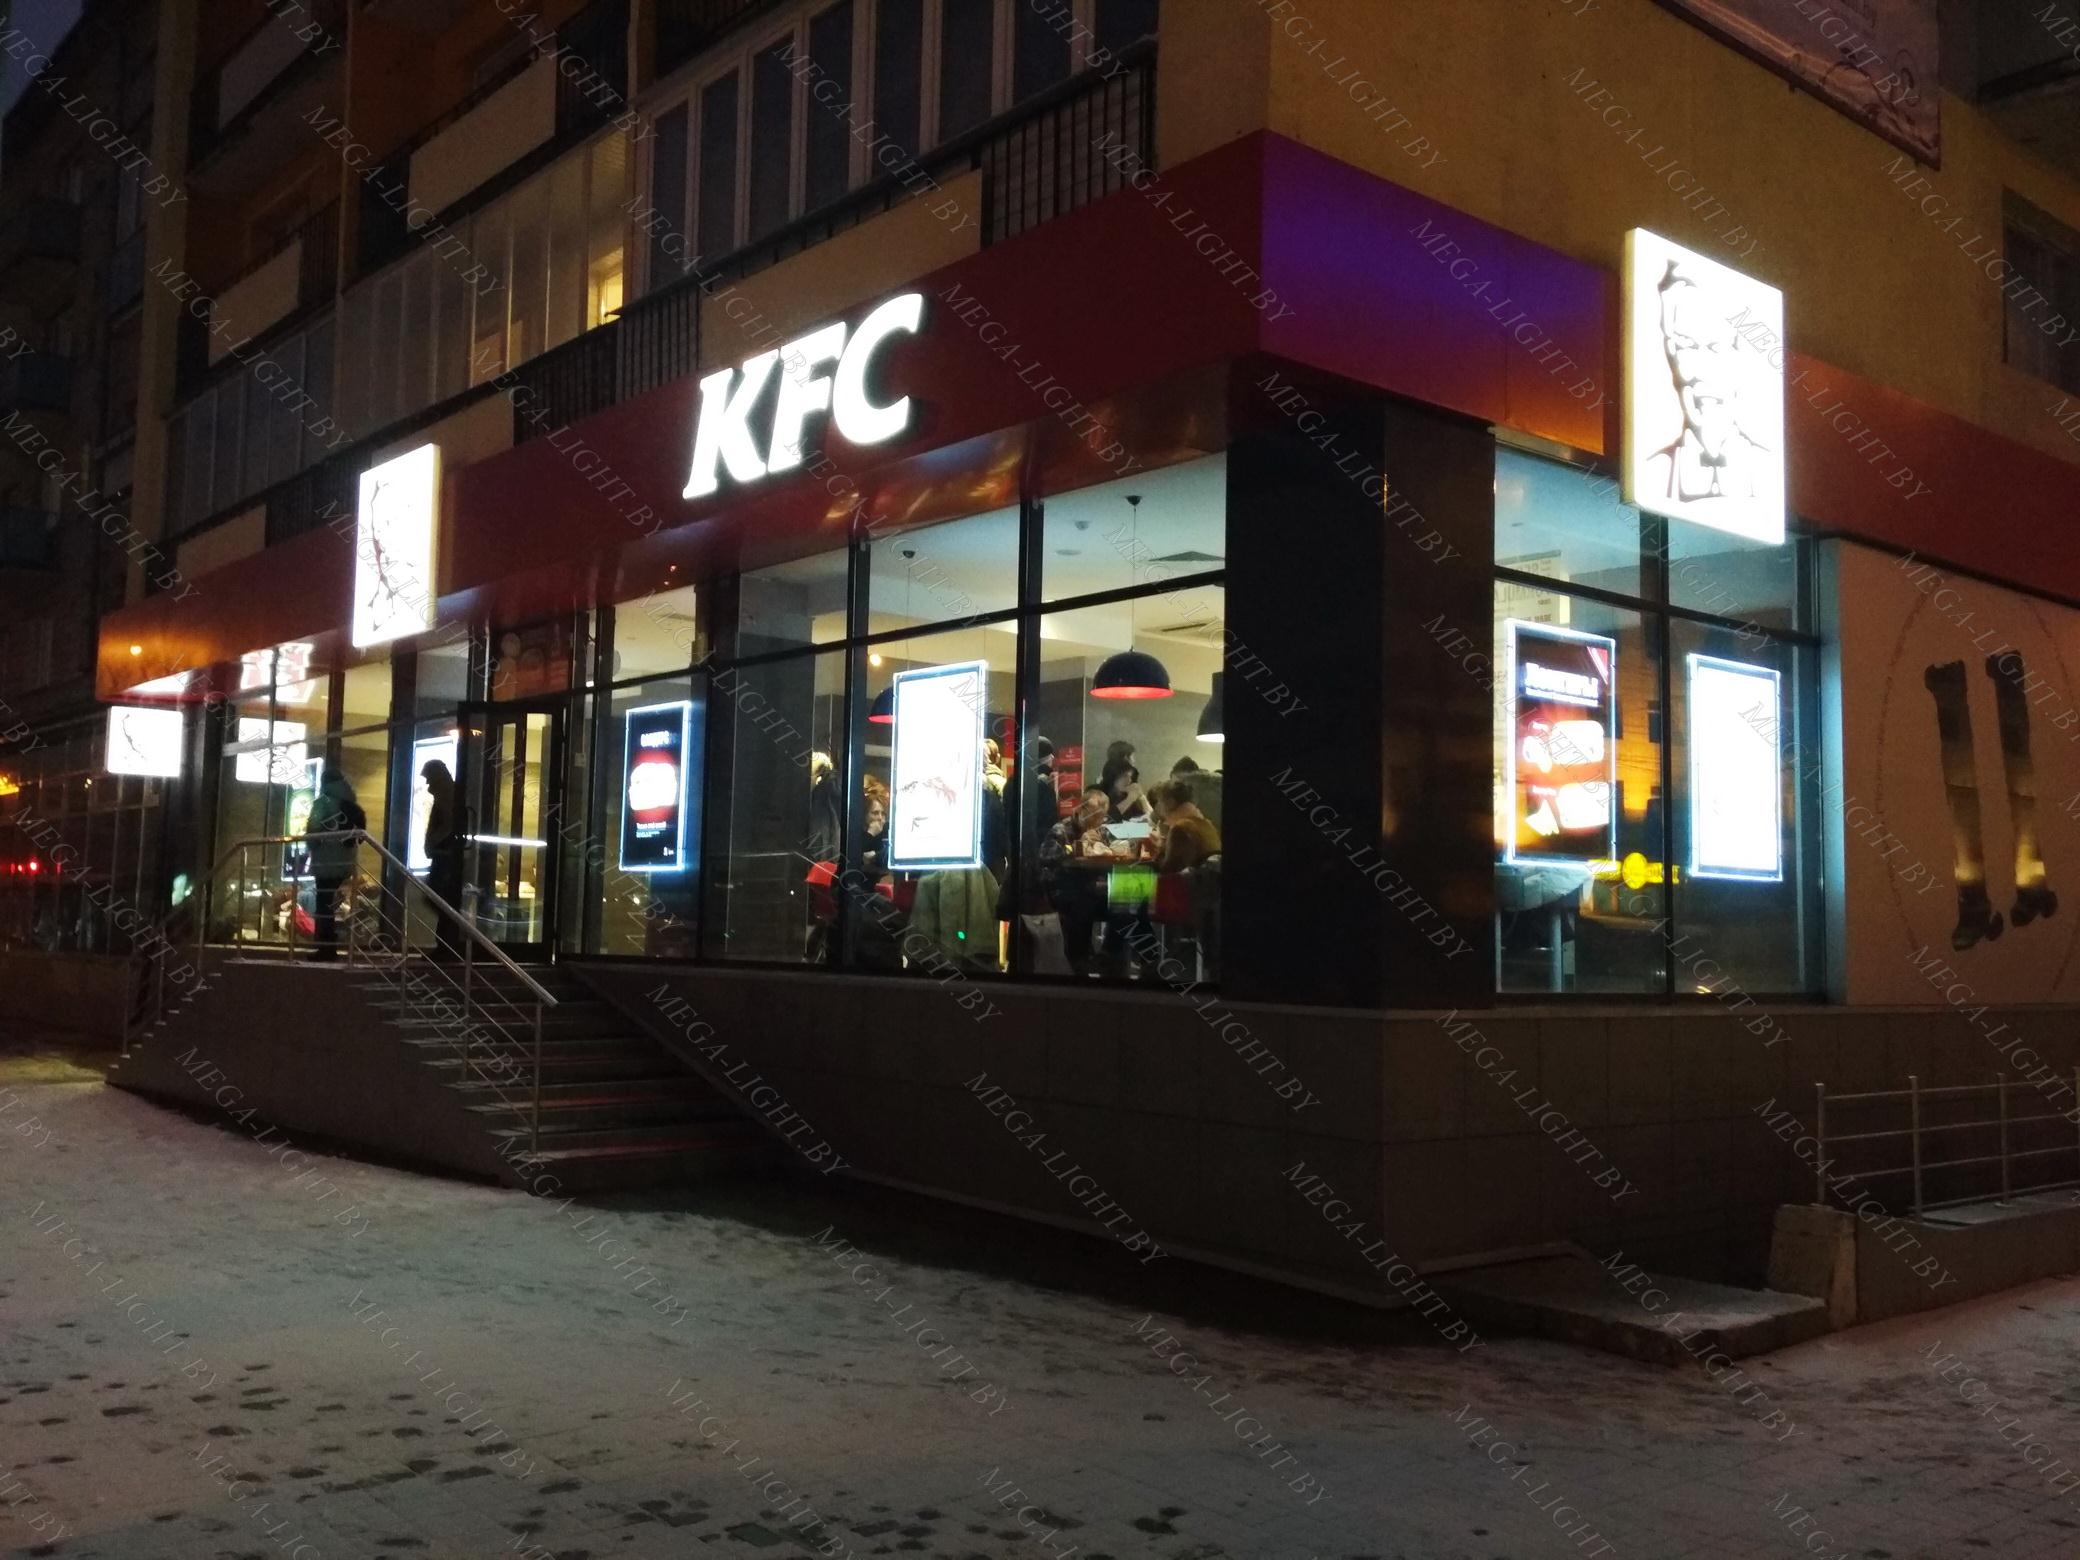 Новые рестораны Burger King и Sbarro украшают светодиодные панели от LOFT MEDIA